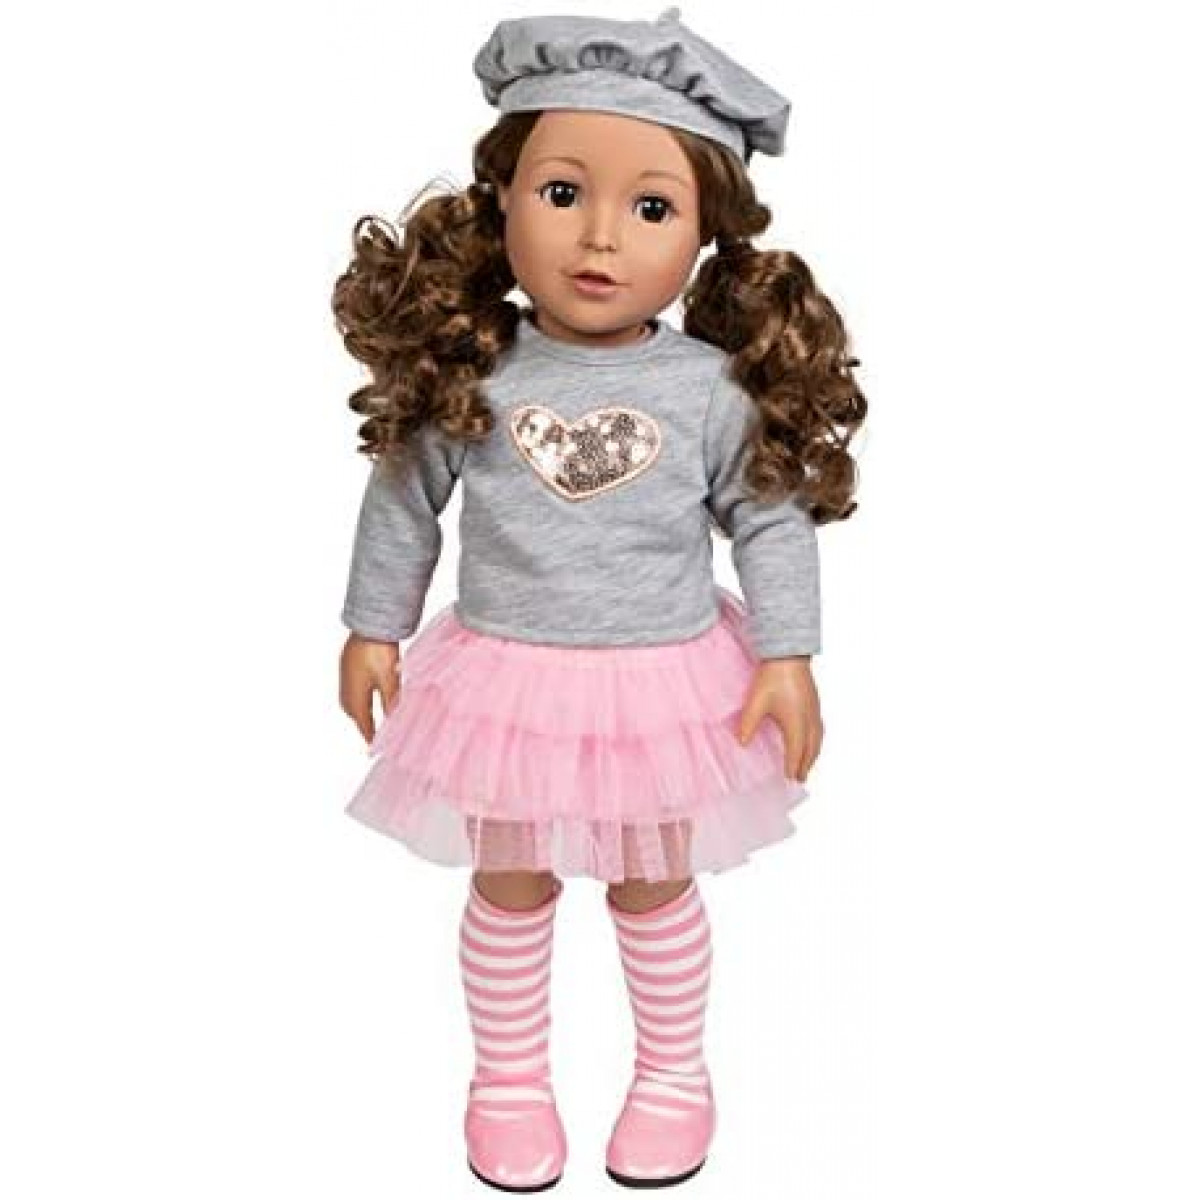 Adora 18-inch Doll Amazing Girls Jacqueline (Amazon